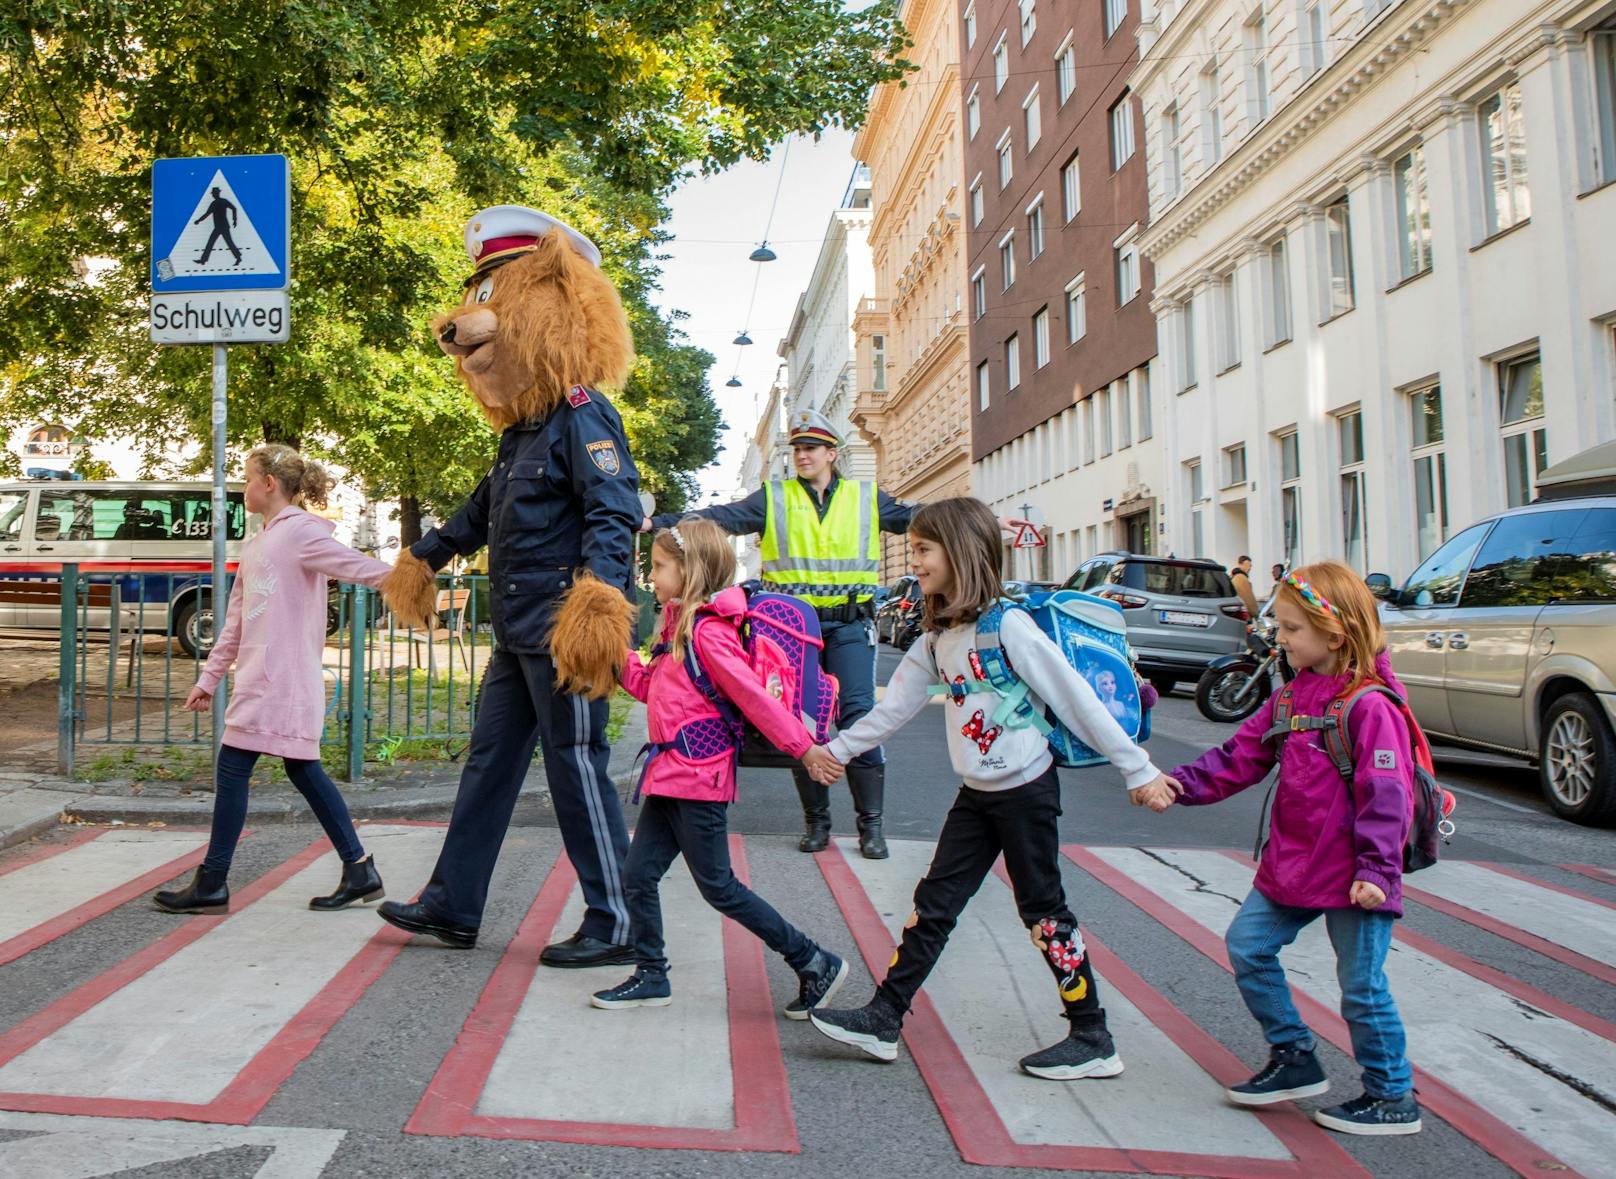 Polizeibär "Tommy" bringt die Kinder sicher über die Straße. 